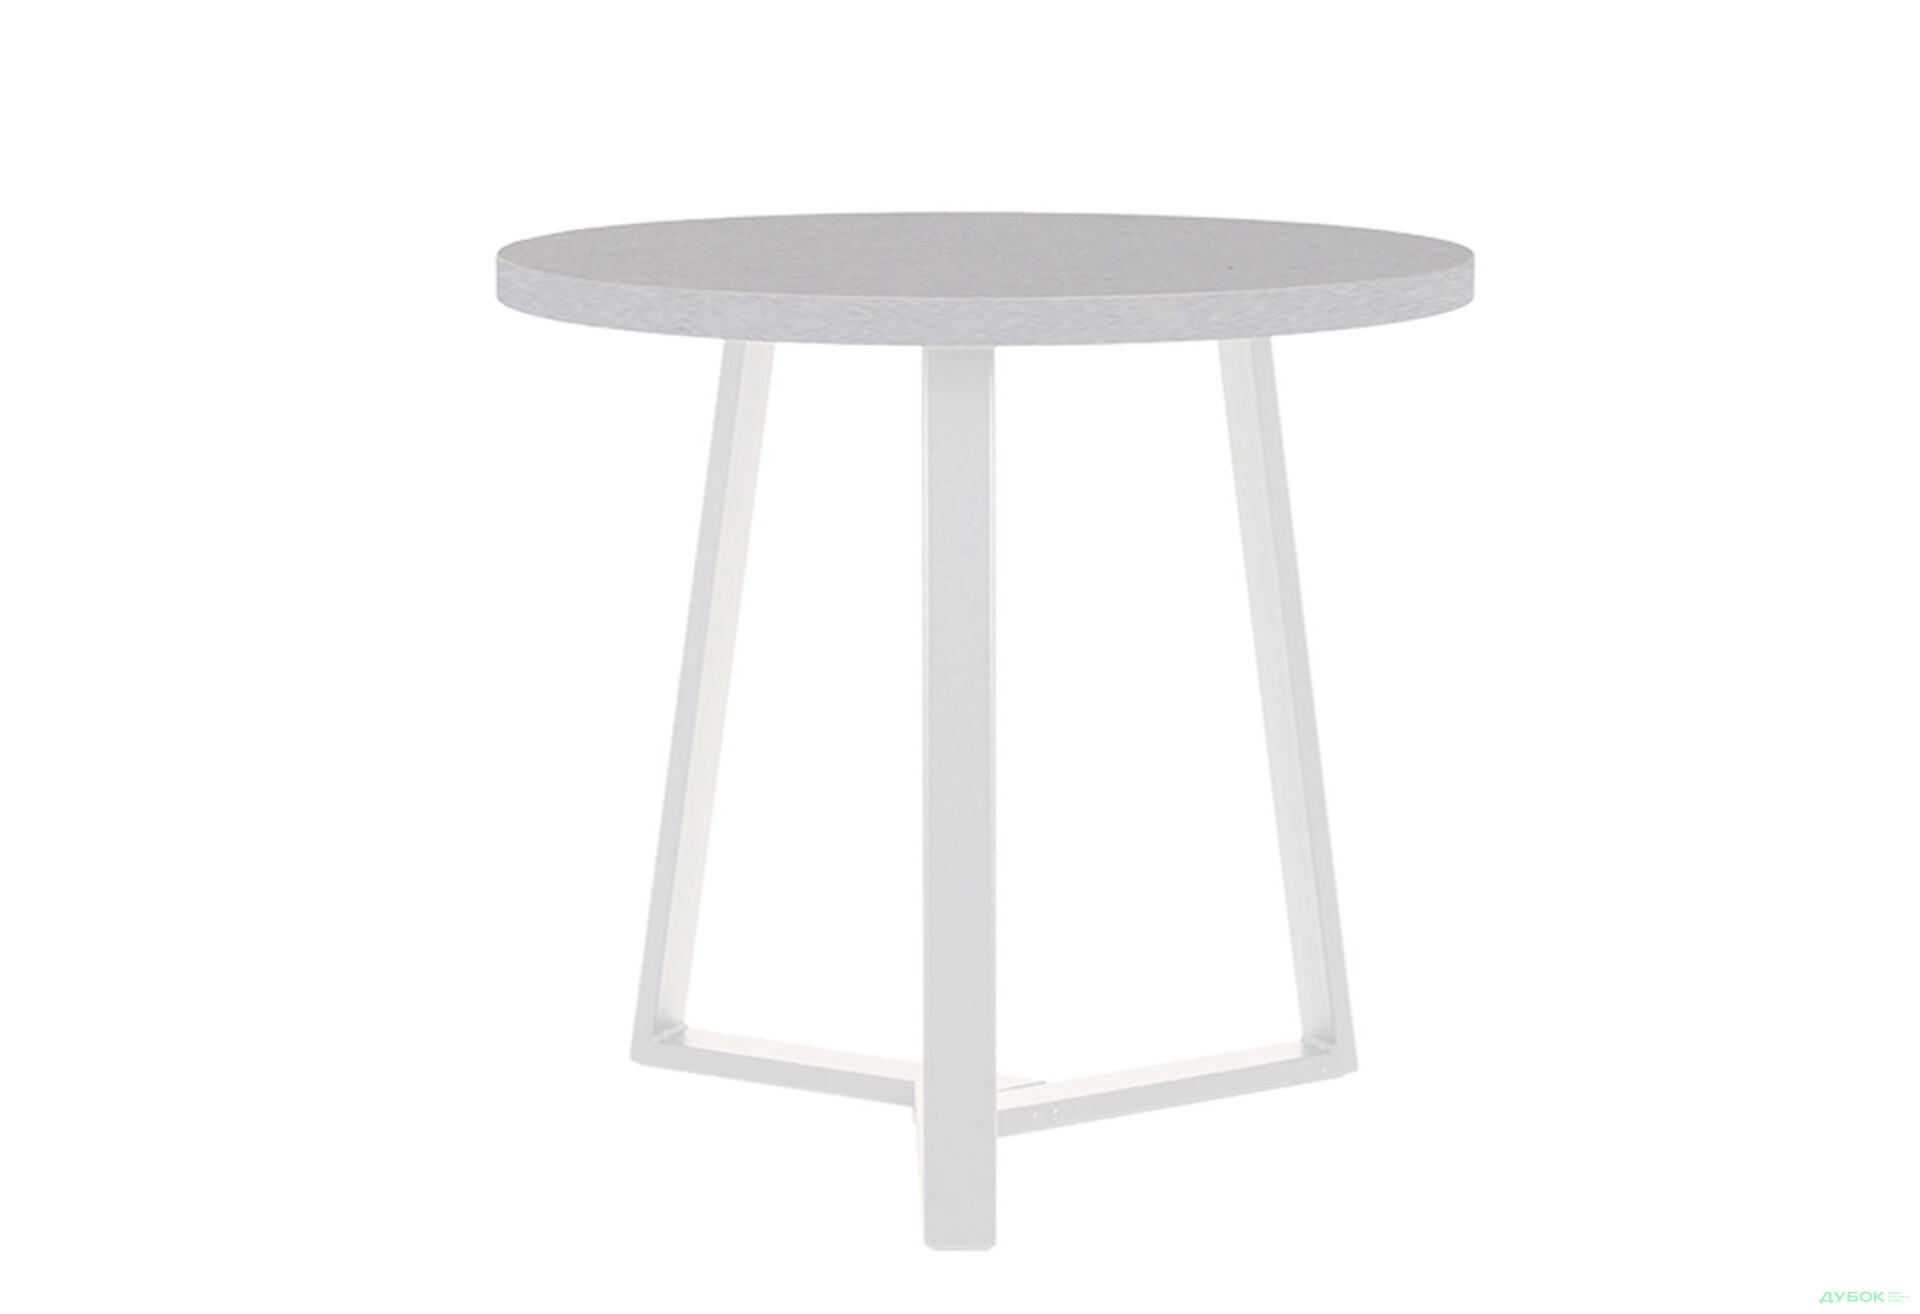 Фото 2 - Стол обеденный Новый Стиль Calipso white (36) D800 80x80 см, серый